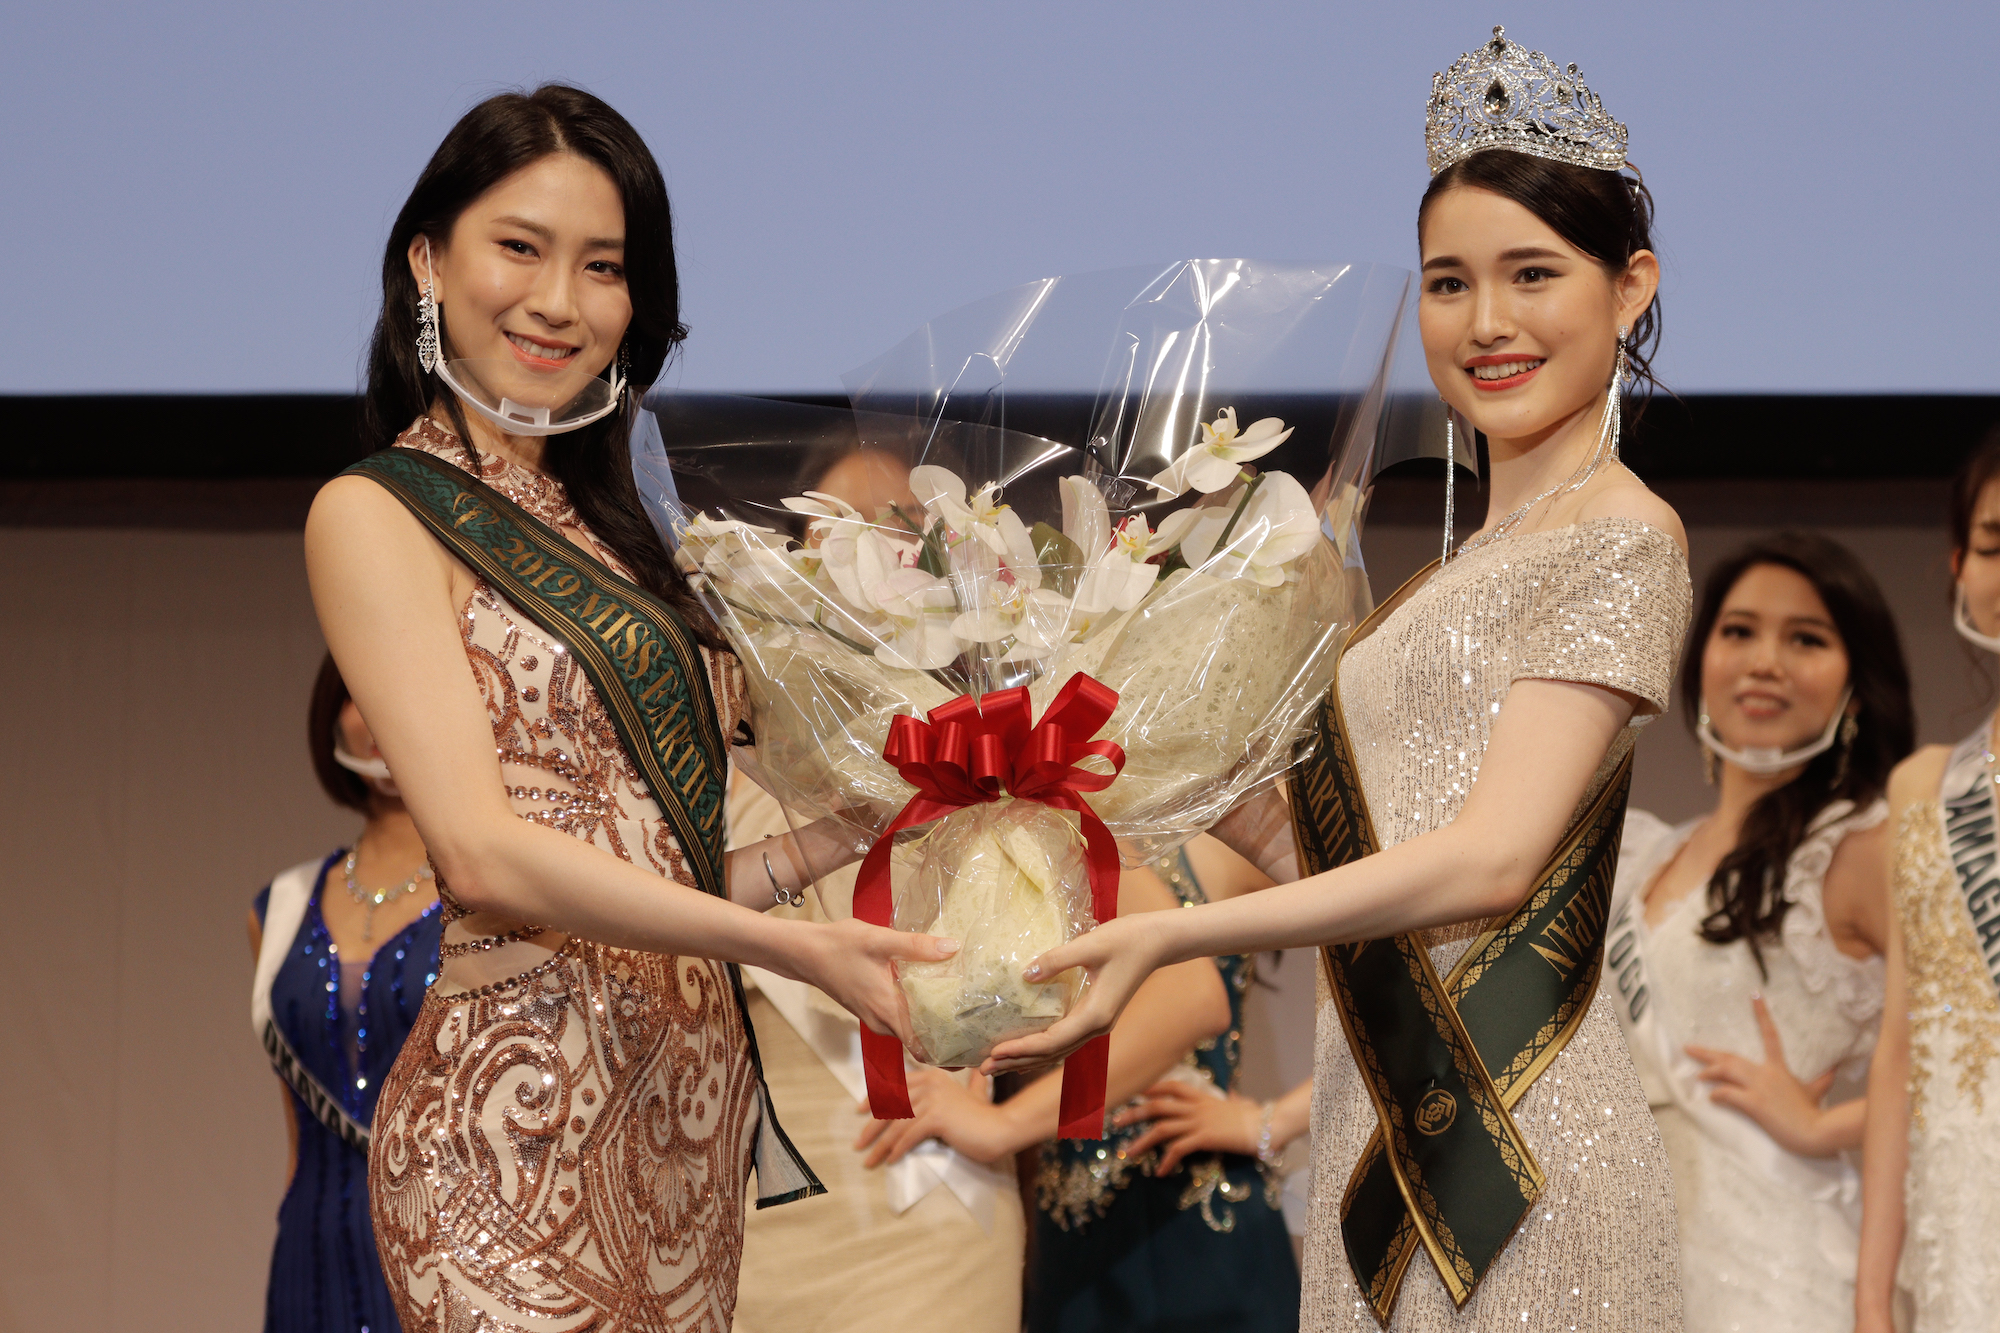 『2020ミス・アース・ジャパン』日本代表は、お茶の水女子大学生・東出あんなが受賞！